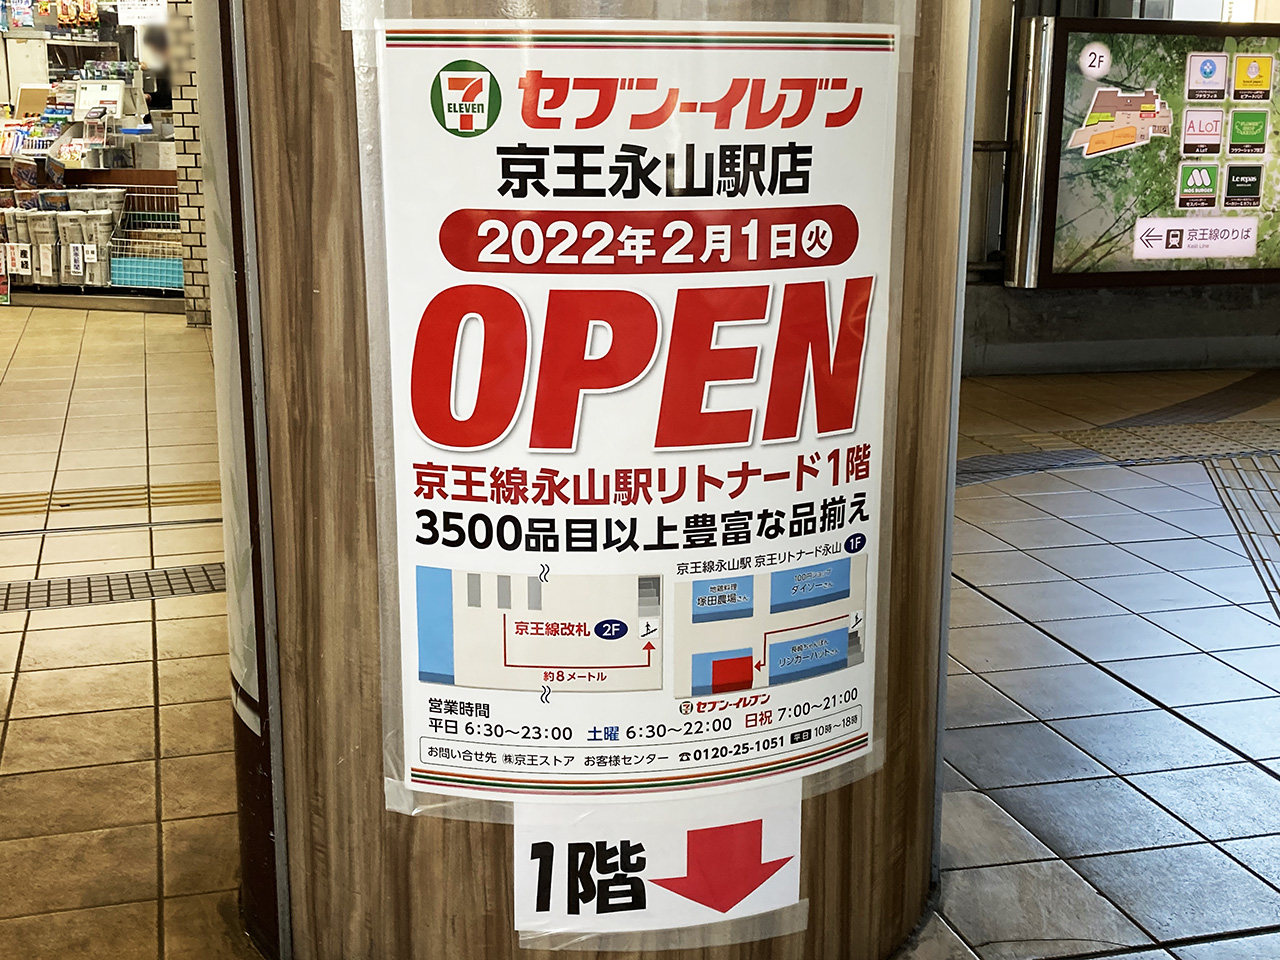 京王ストアエクスプレス永山店の跡地に『セブン-イレブン京王永山駅店』が新規オープンしました